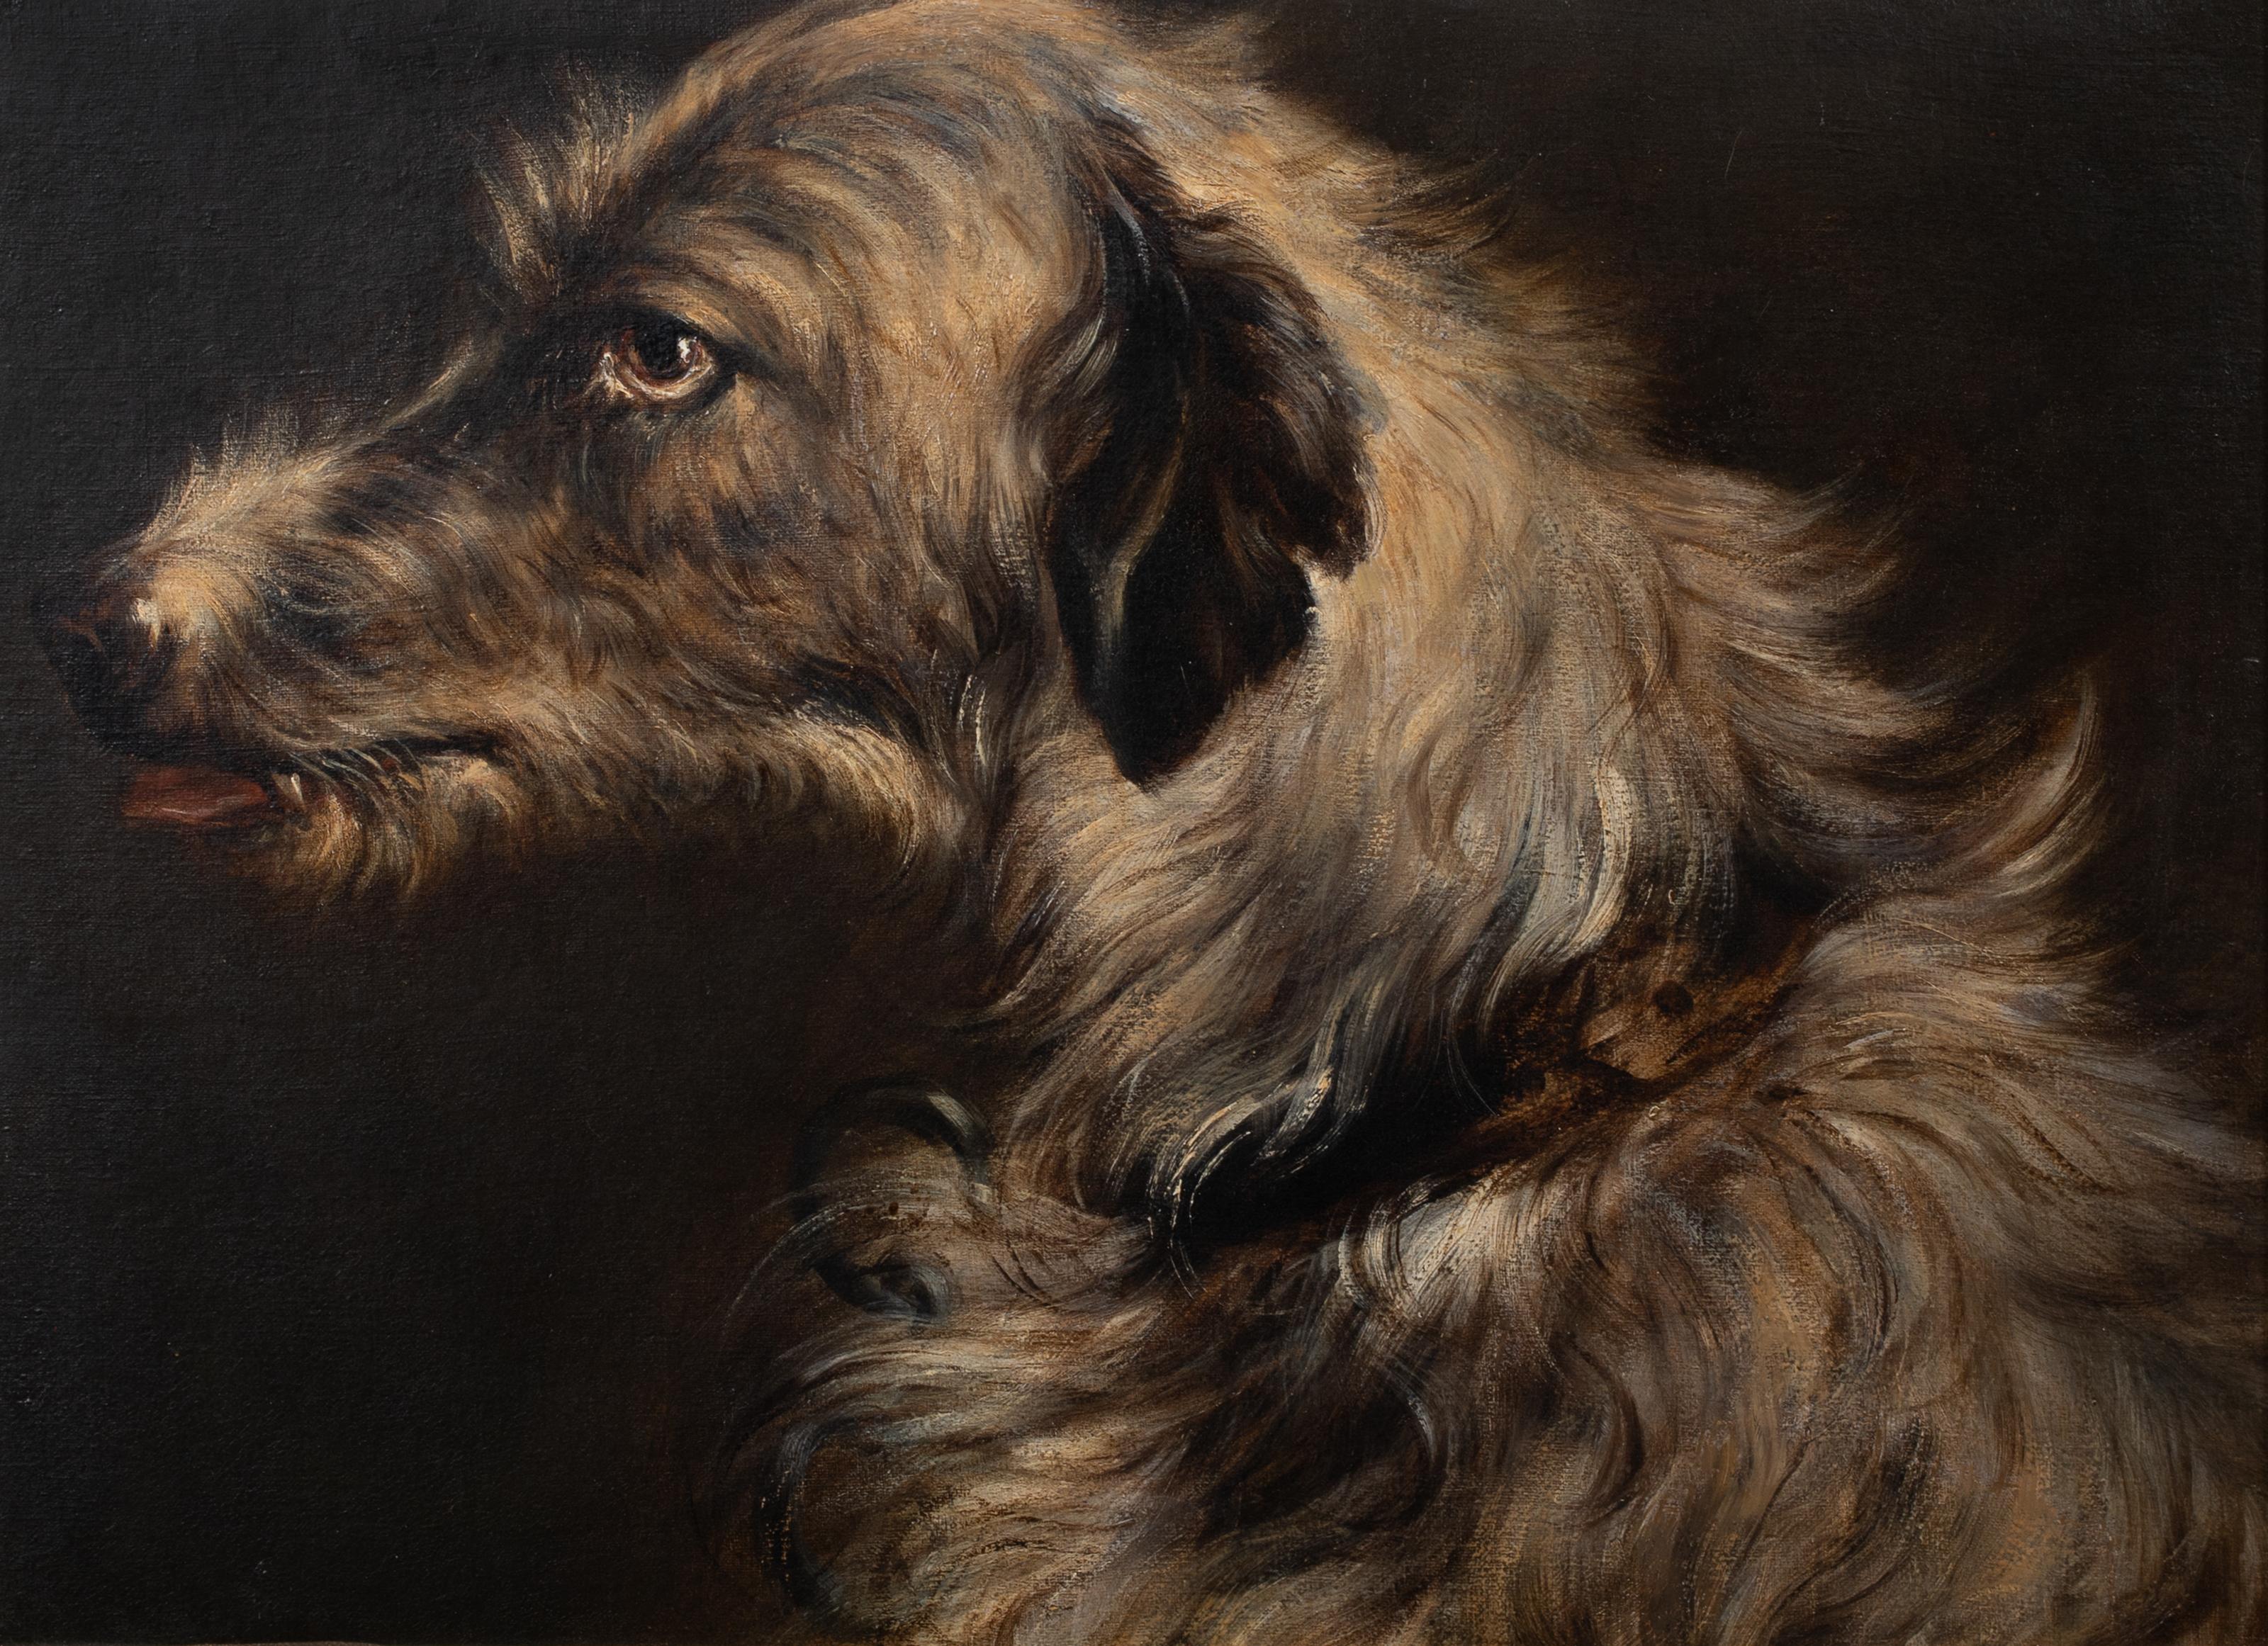 Portrait d'un Irish Wolfhound, 19e siècle

attribué à Edwin Henry LANDSEER (1802-1873)

Grand portrait d'un Irish Wolfhound au XIXe siècle, huile sur toile attribuée à Edwin Landseer. Excellente qualité et condition de l'étude de la tête de profil